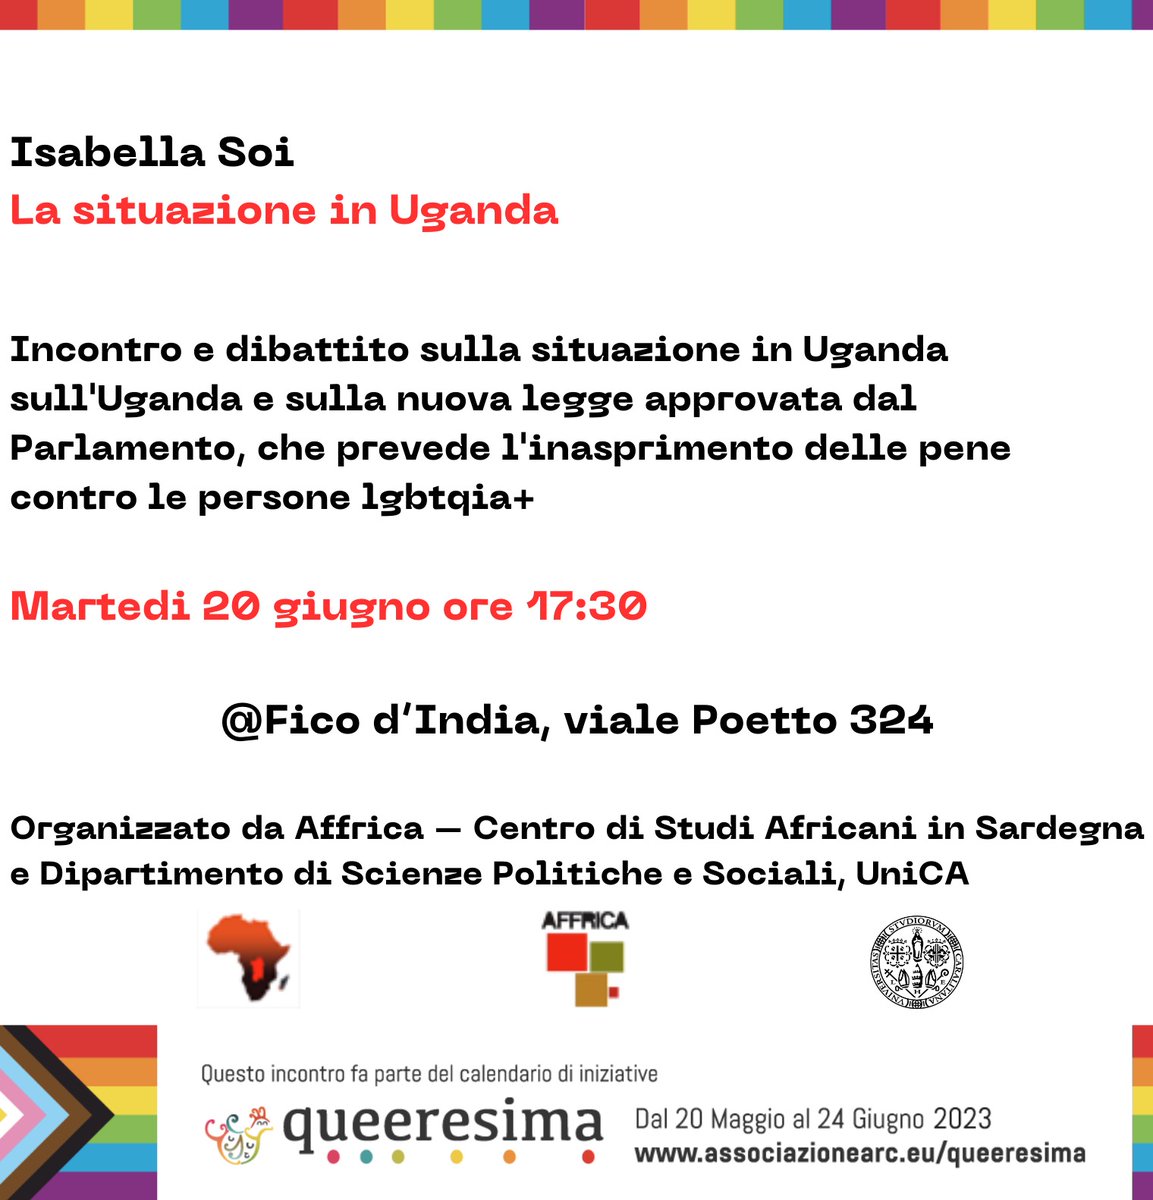 Martedi 20 giugno alle ore 17.30 al Fico d'india si parla di Uganda @AssociazioneARC #queeresima2023 @AFFRICAorg @univca @SPolUniCA